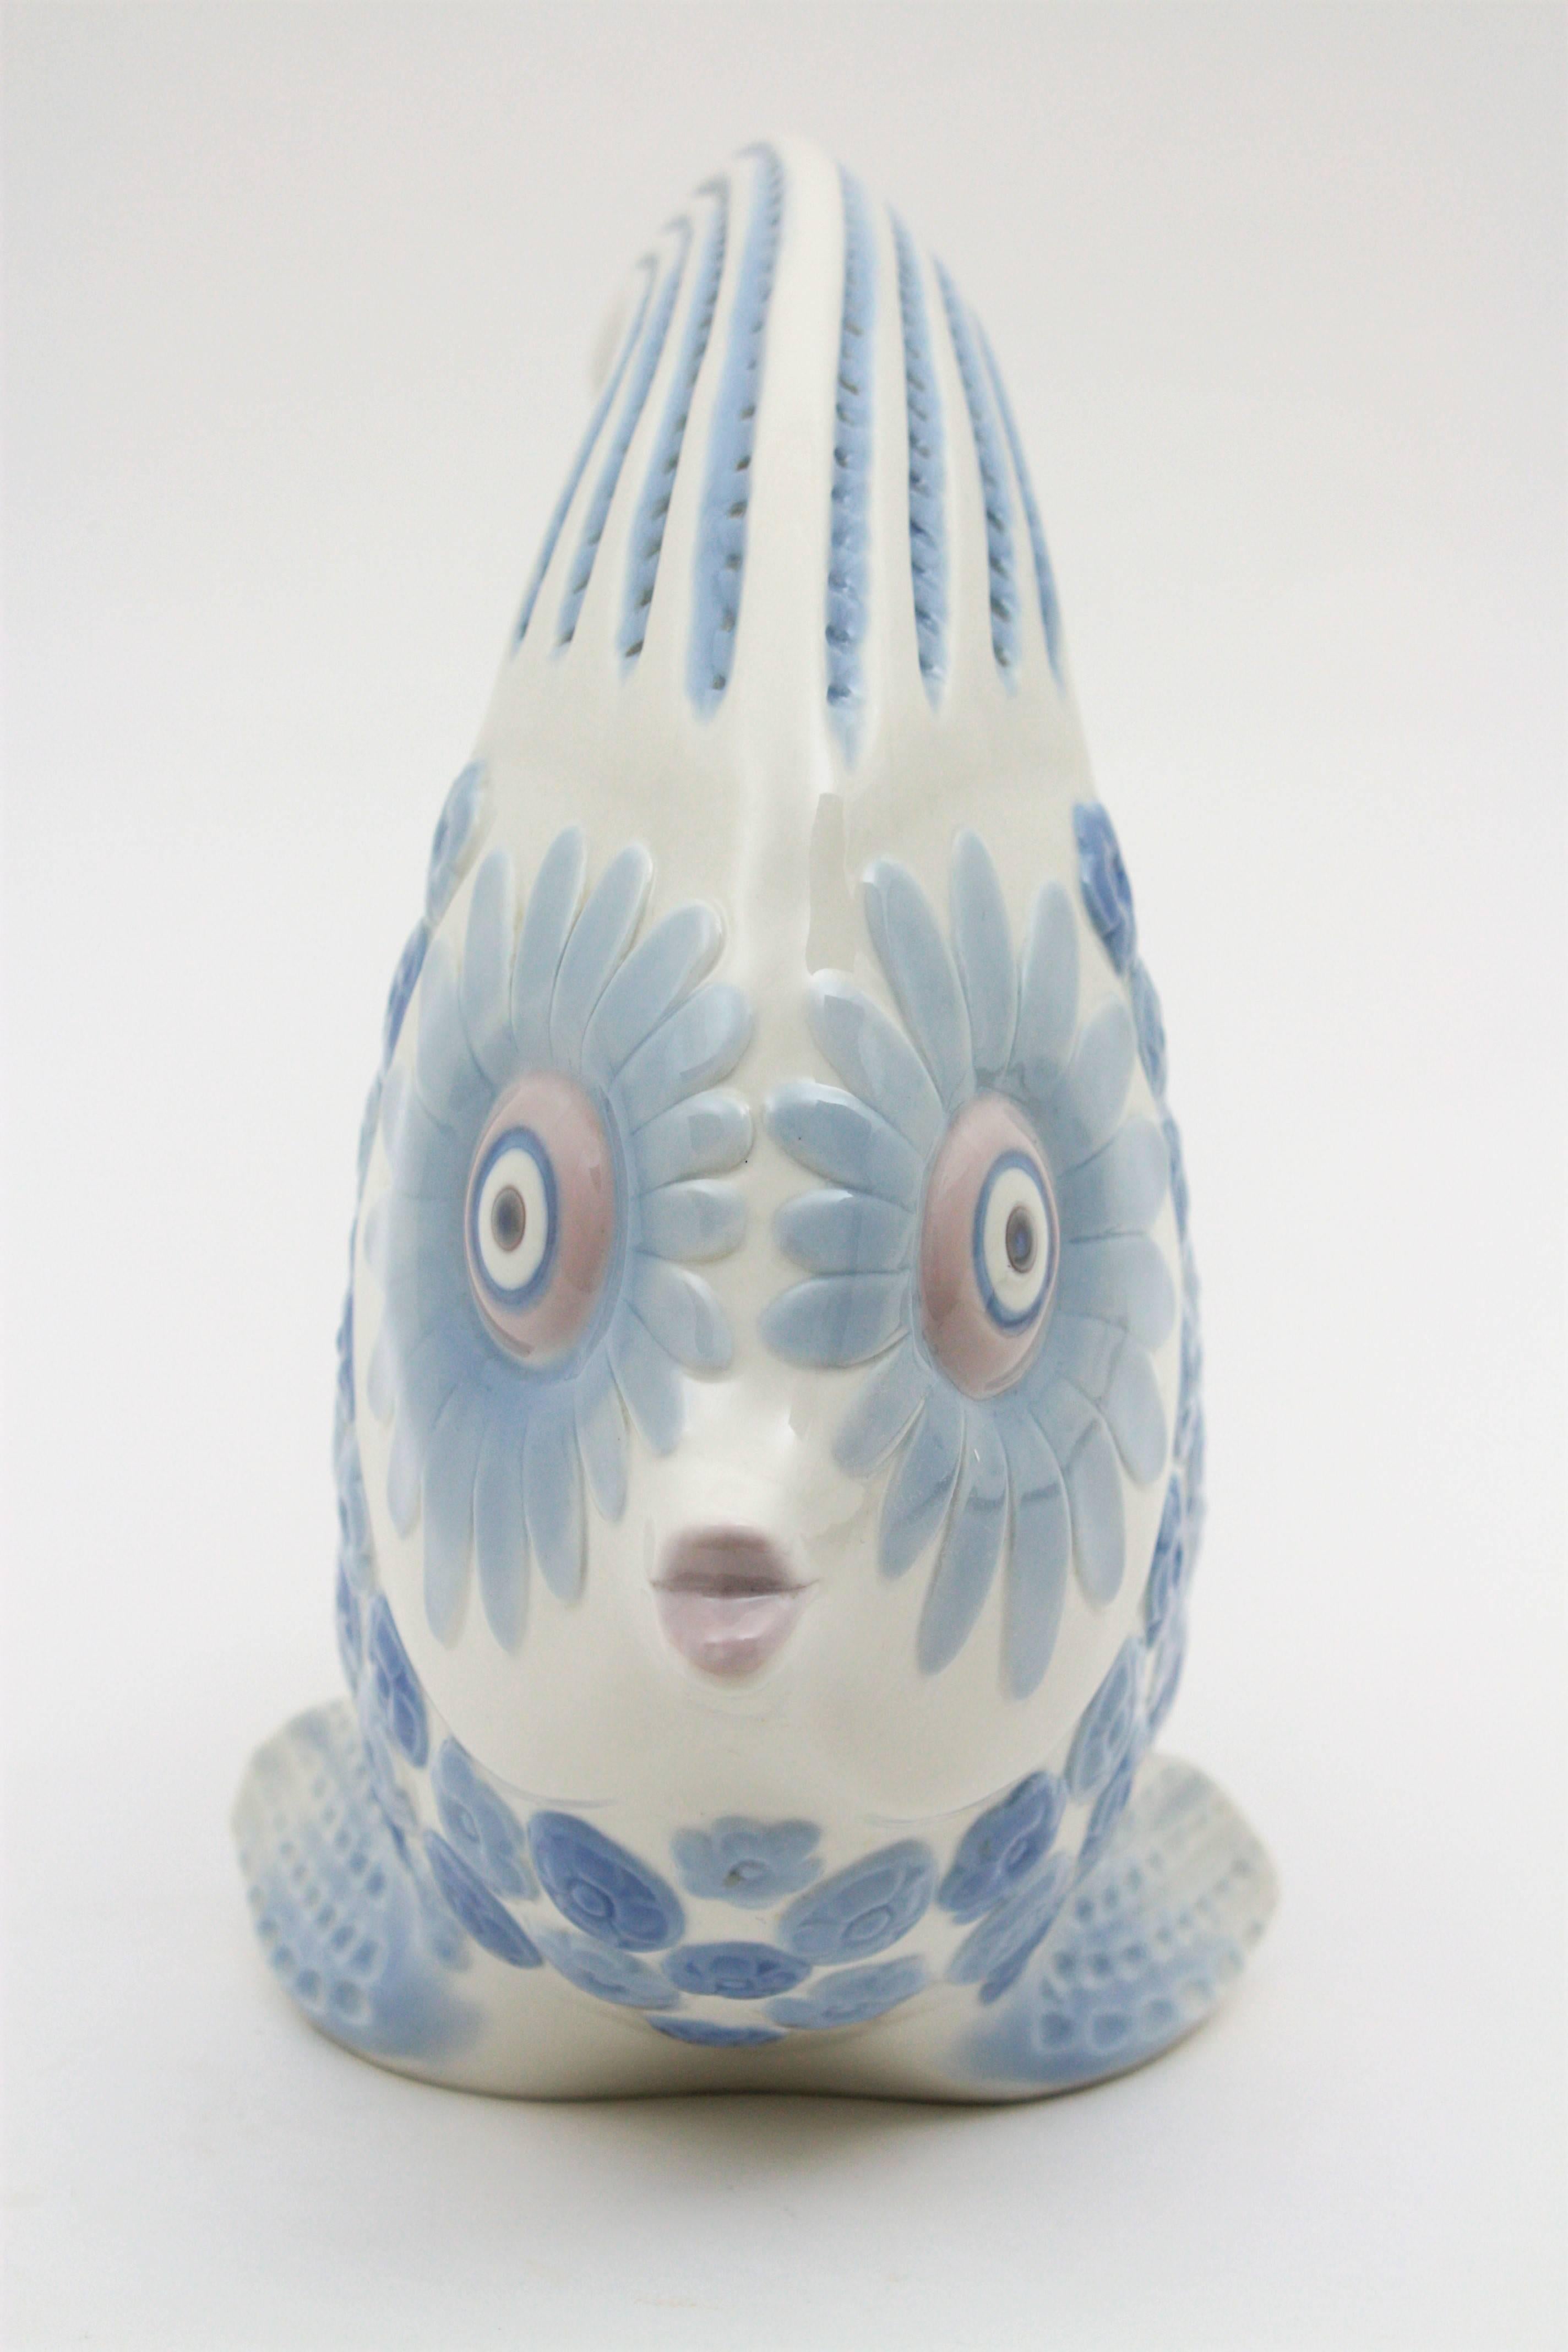 Molded Lladró Porcelain Blue and White Fish Figure Vase / Centerpiece , Spain, 1970s